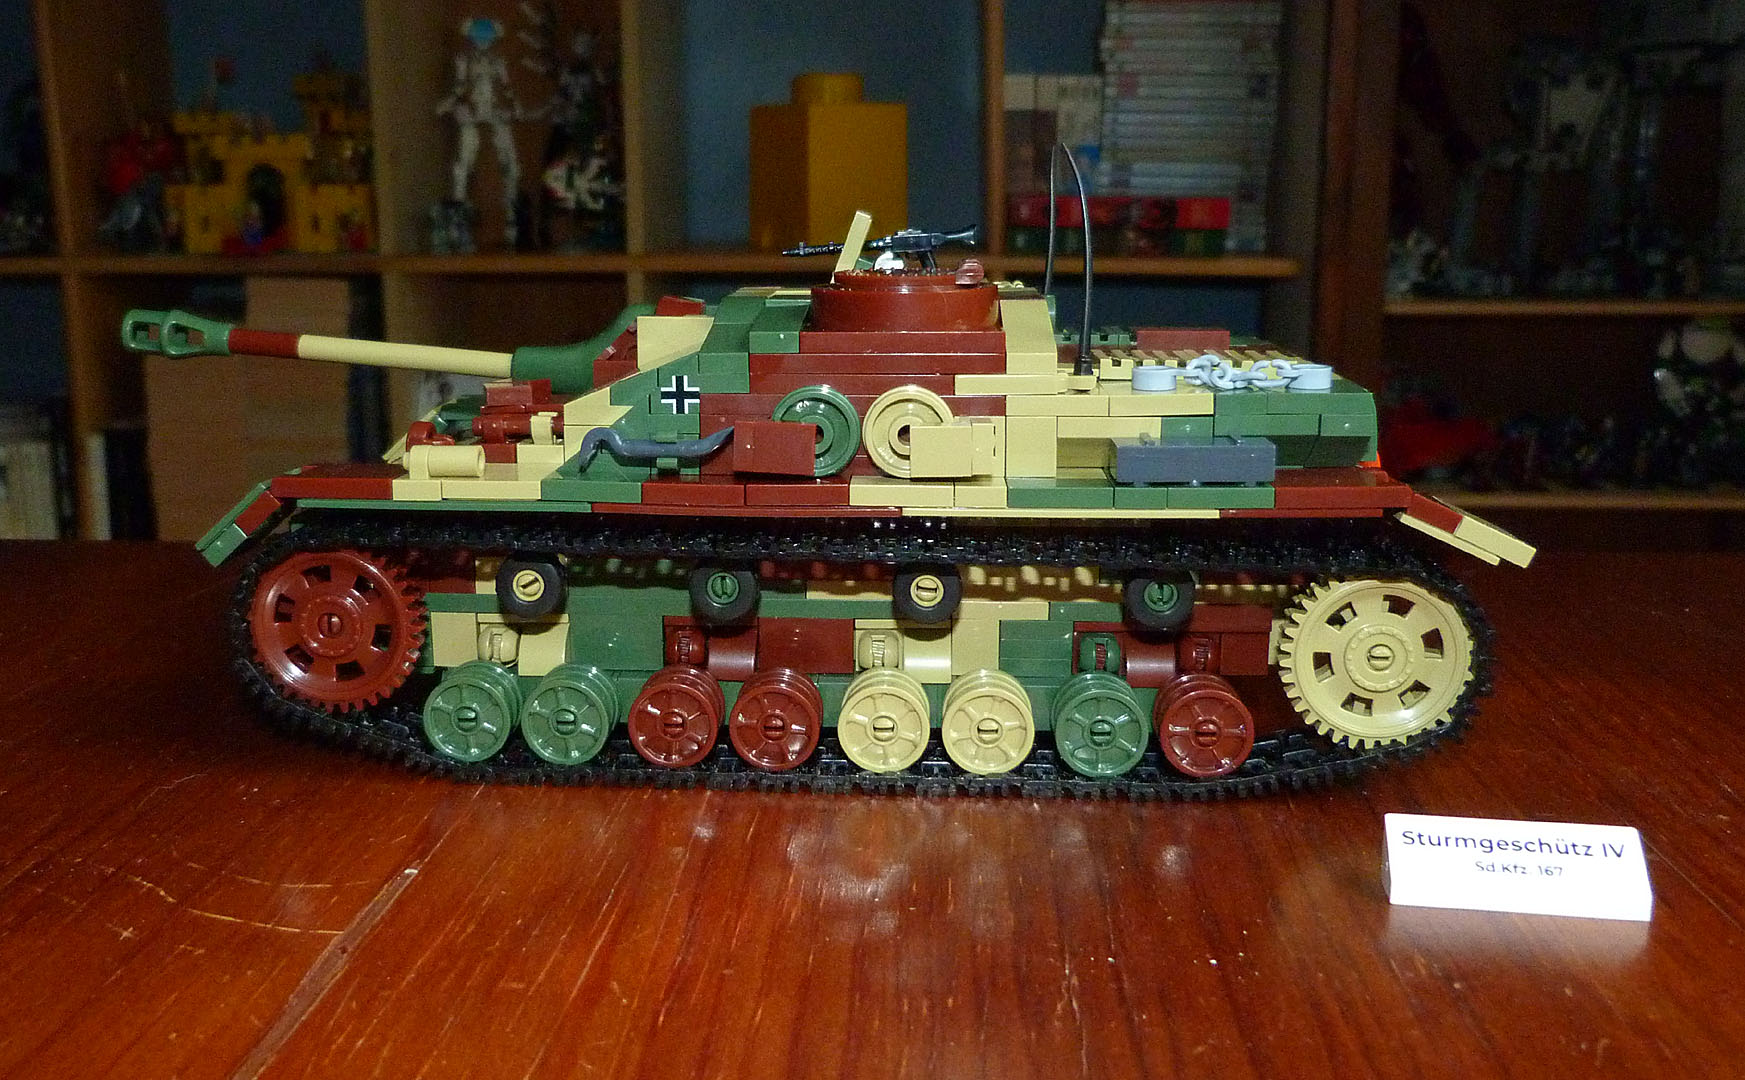 Panzer Sturmgeschutz IV Cobi bricks